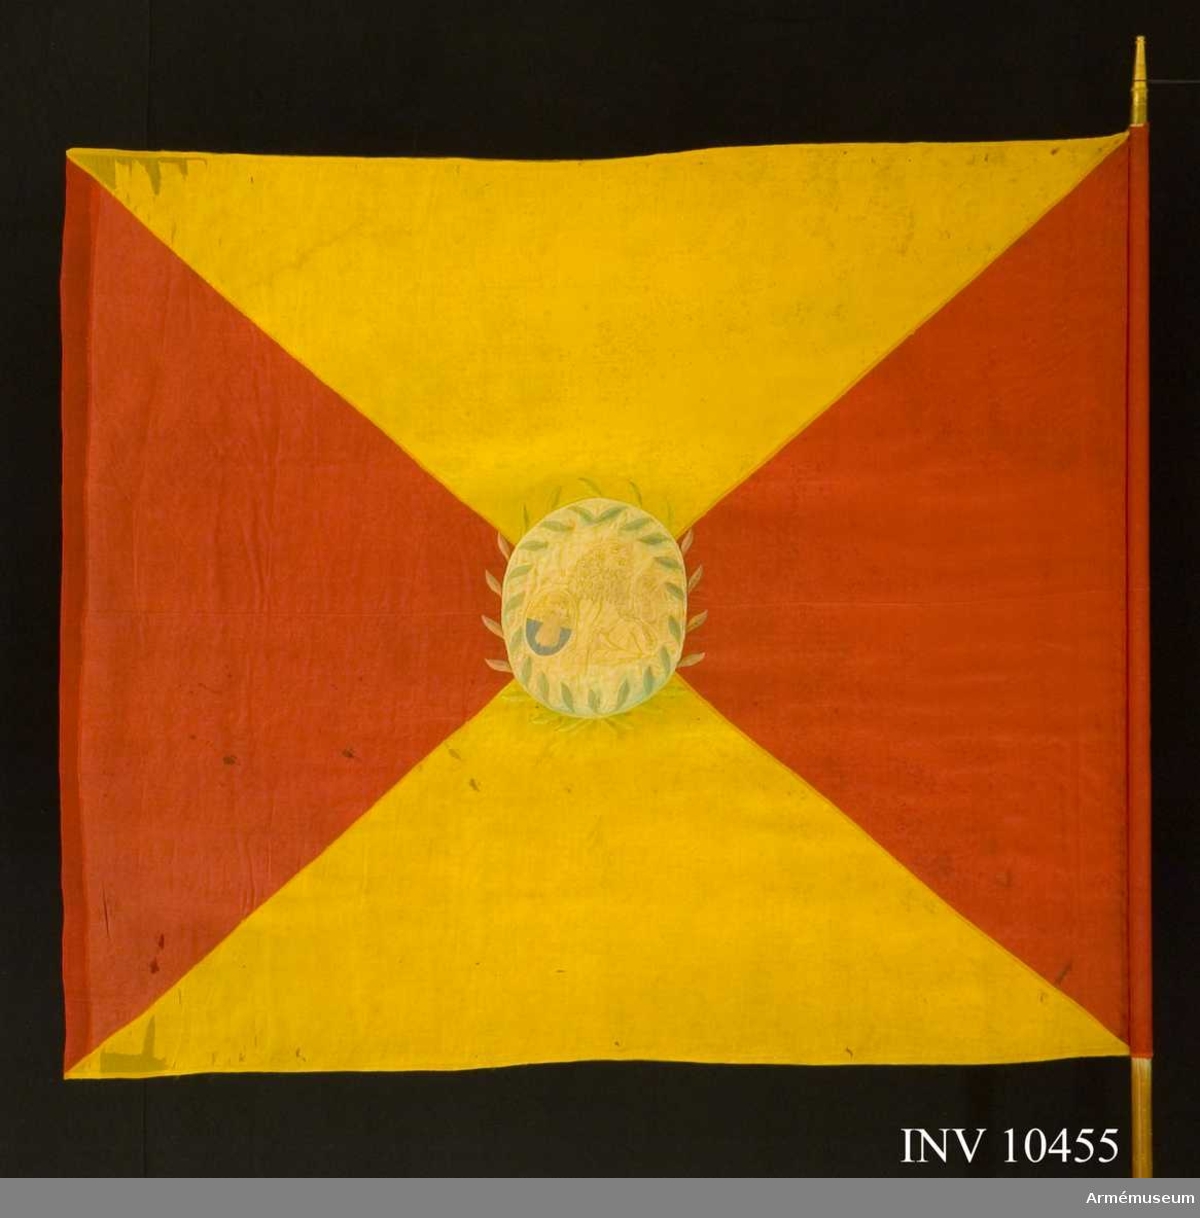 Grupp B I.

Kompanifana för Adlercreutzska regementet, som 1807 sytts om till kompanifana för Norra och Södra Skånska infanteriregementet 1812. 

Duk av sidenkypert, fyrstyckad röd och gul, i mitten broderat en sköld med Skånes vapen, omgivet av en lagerkrans.